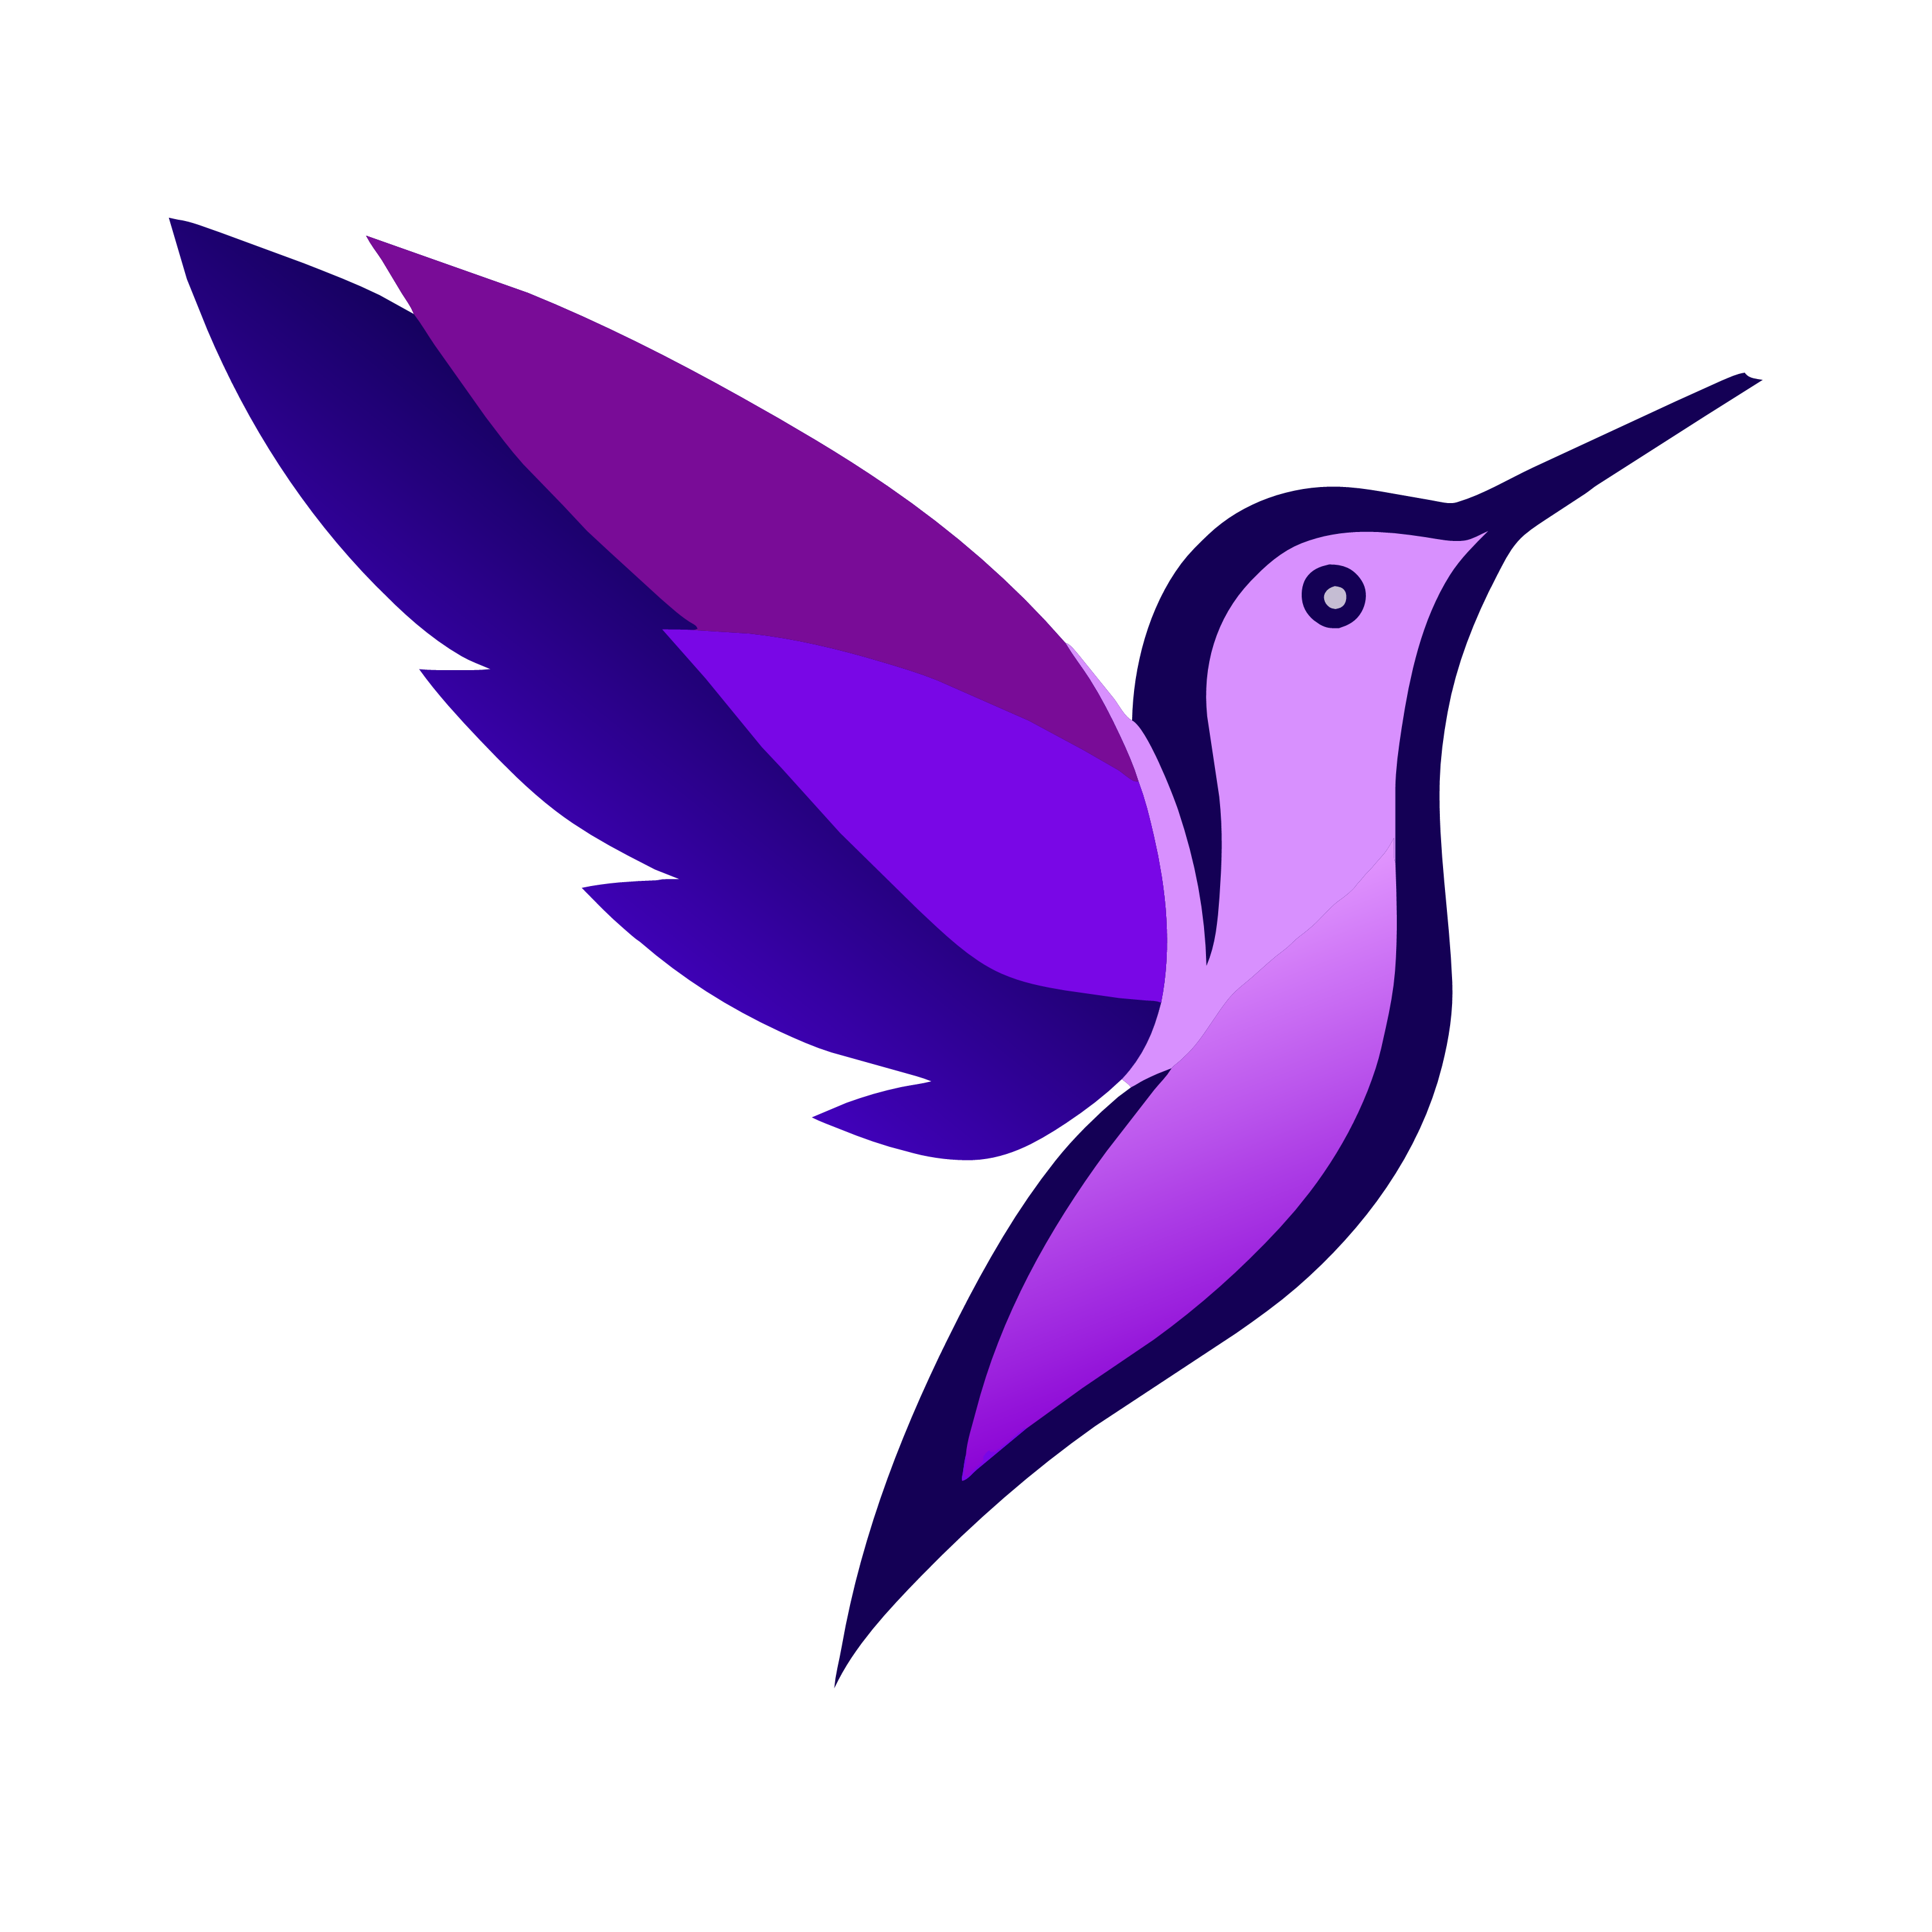 bird head logo design cover image.